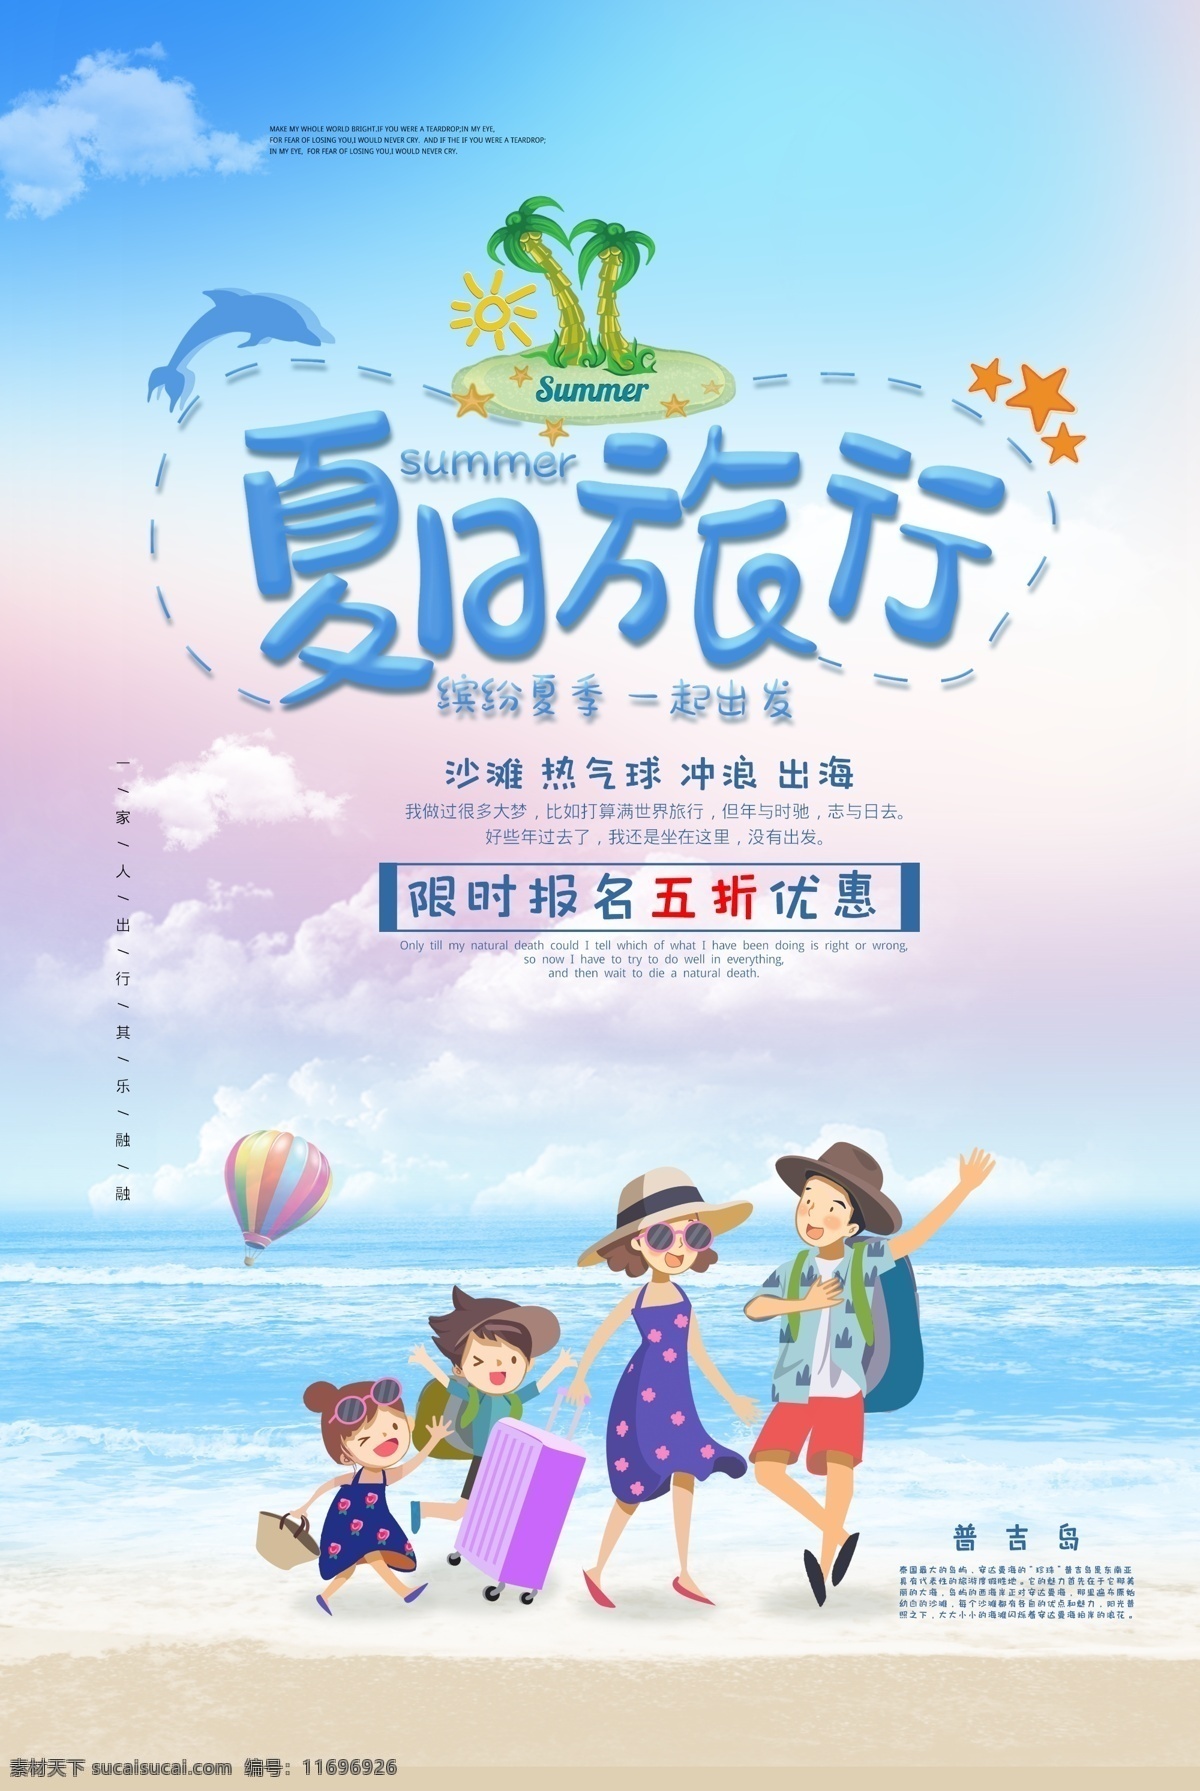 夏季 旅行 活动 促销 宣传海报 宣传 海报 旅游景点 景区